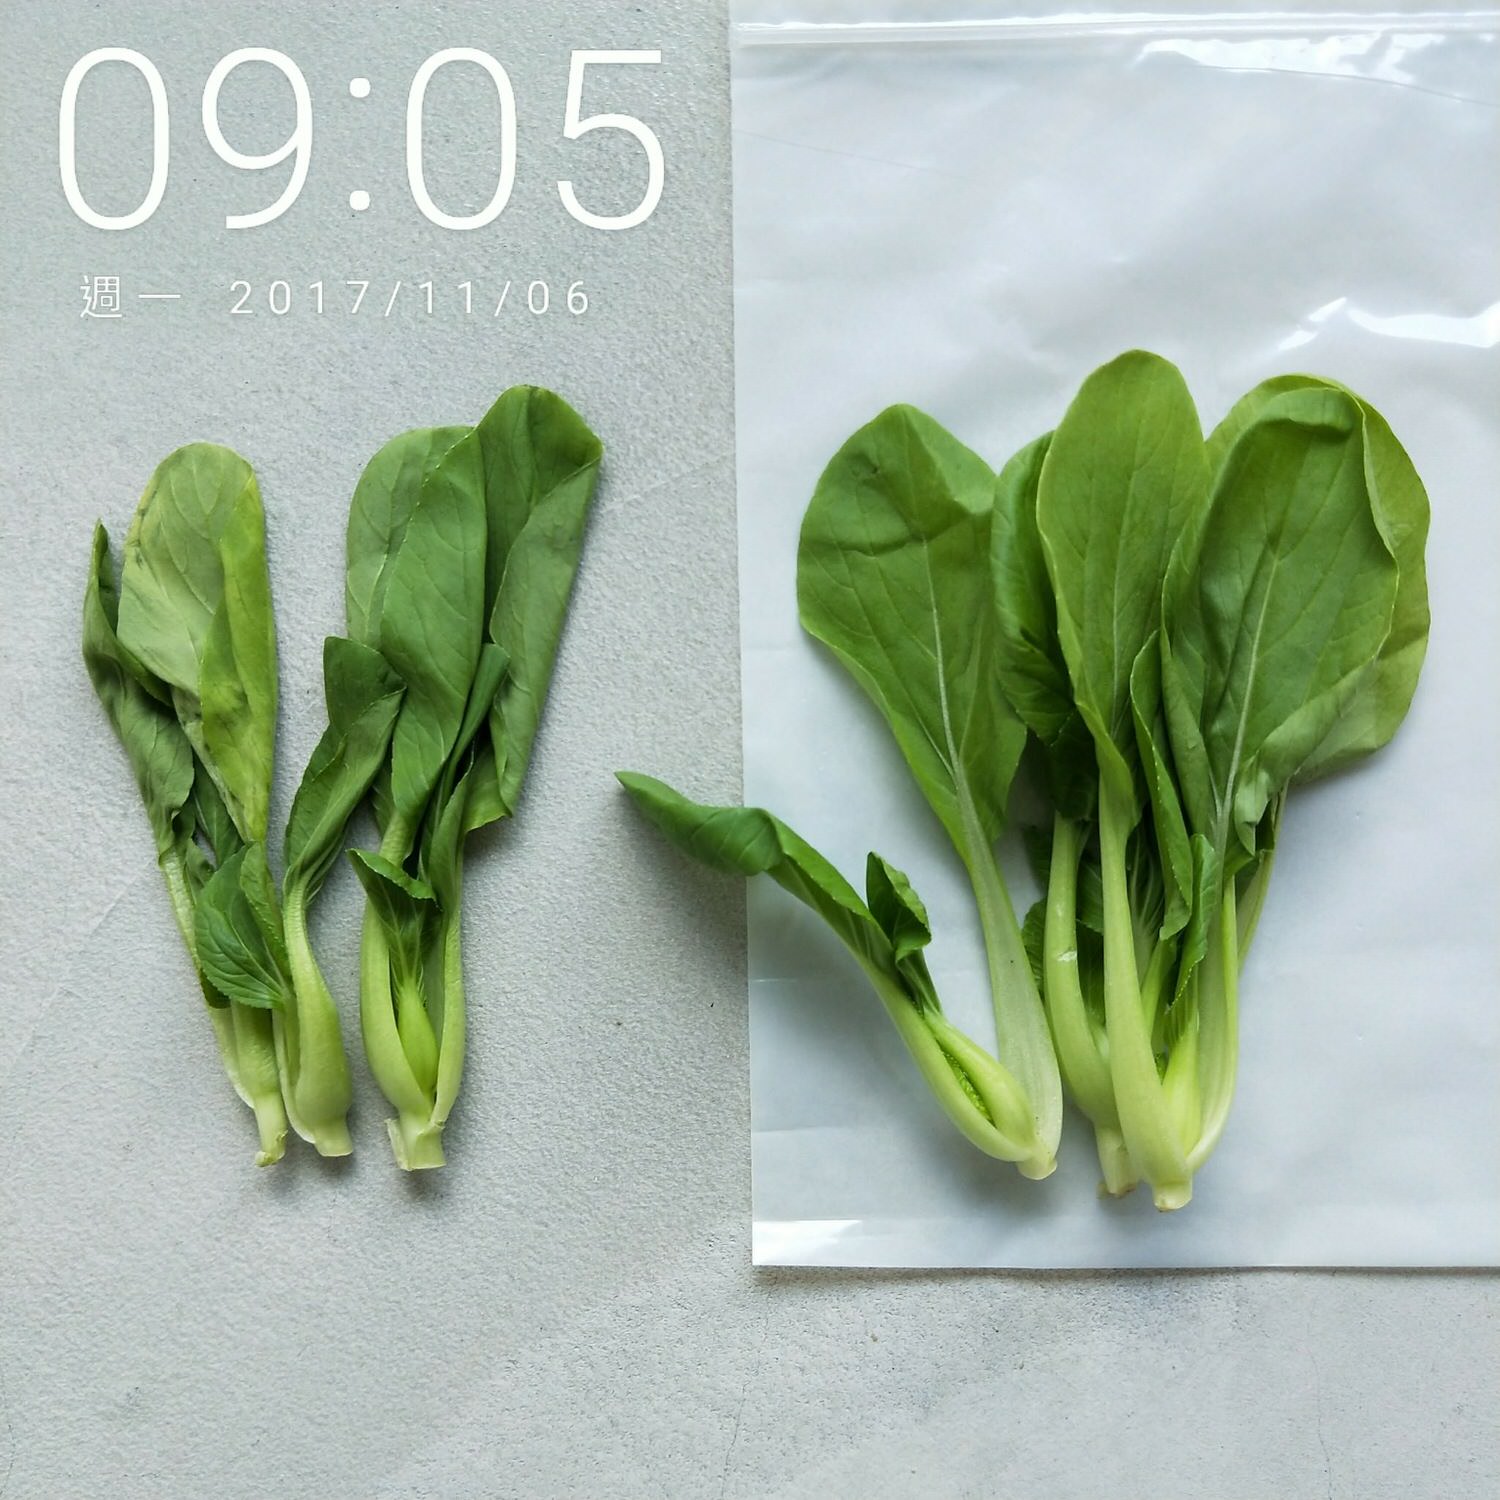 延長蔬果保鮮期-Usii高效鎖鮮袋